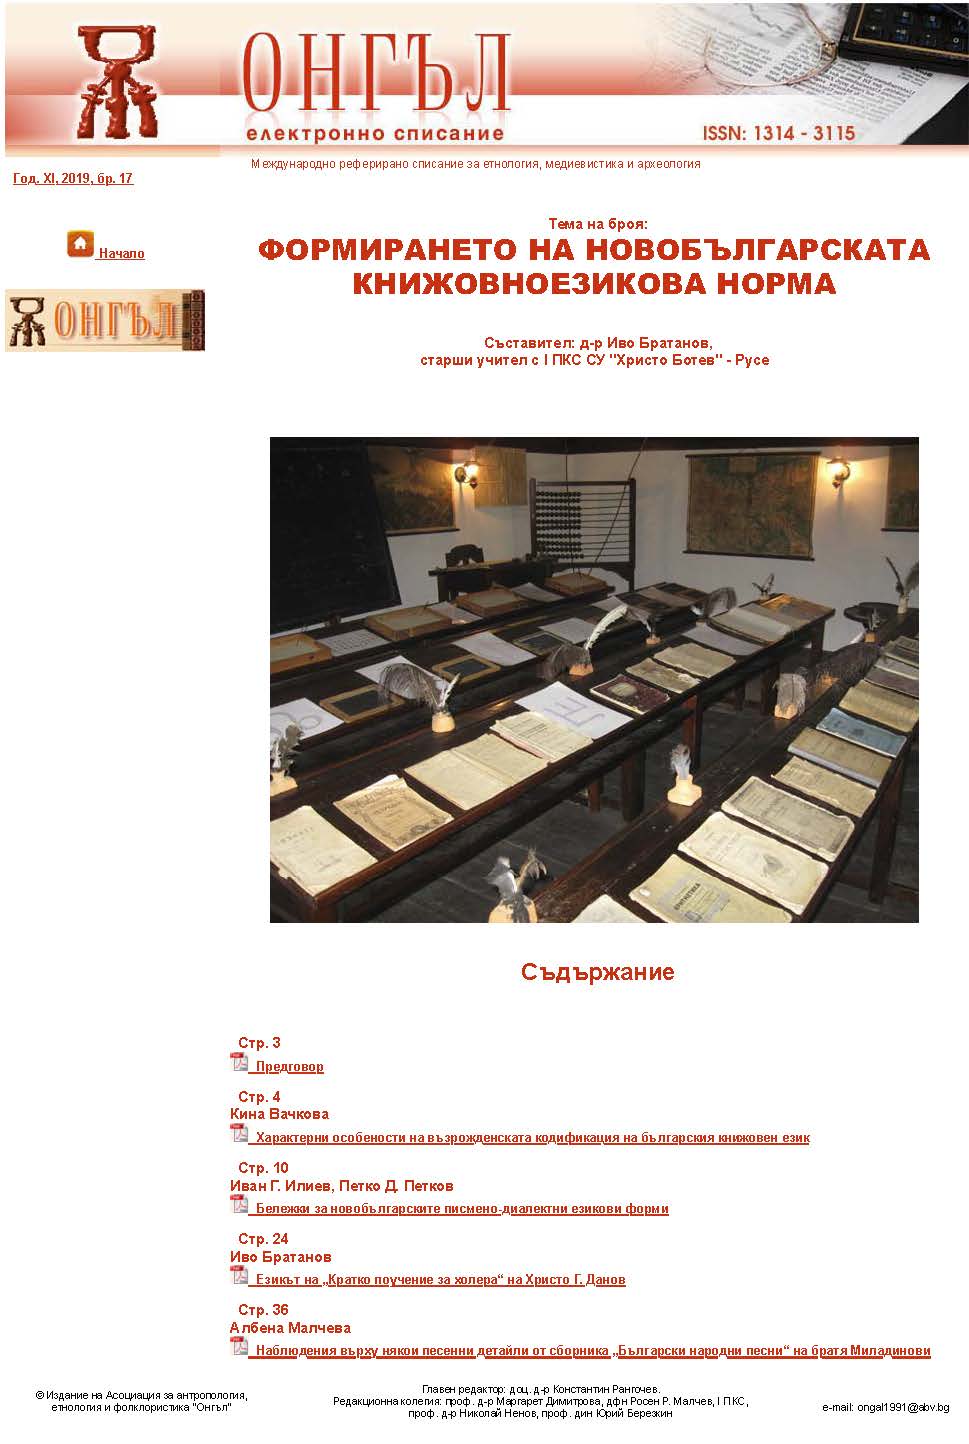 Характерни особености на възрожденската кодификация на българския книжовен език